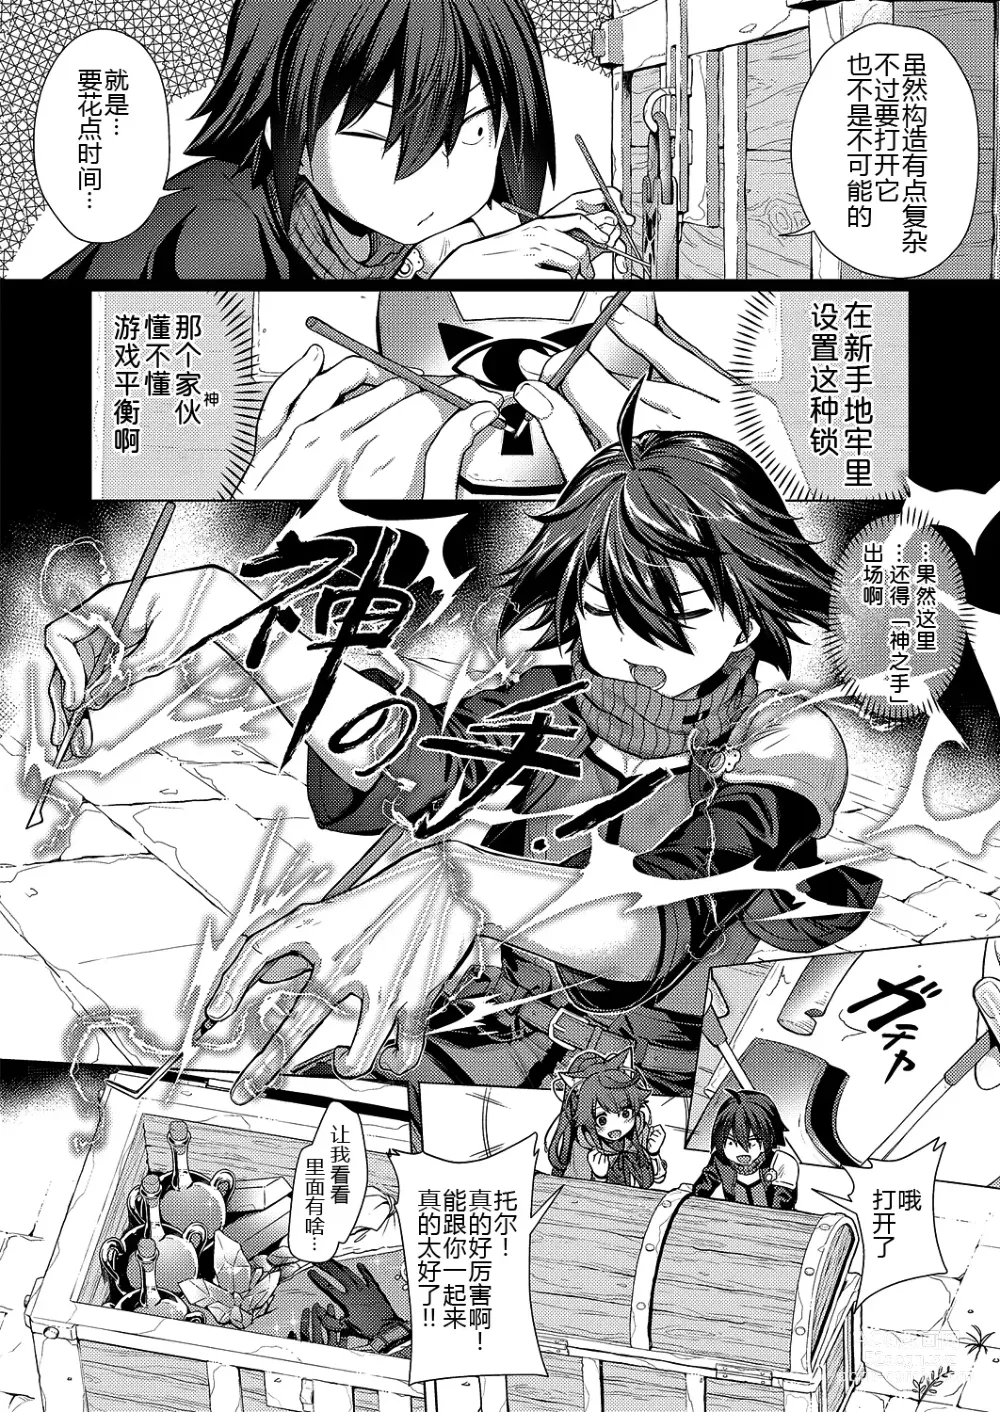 Page 9 of manga Kami no Te 2